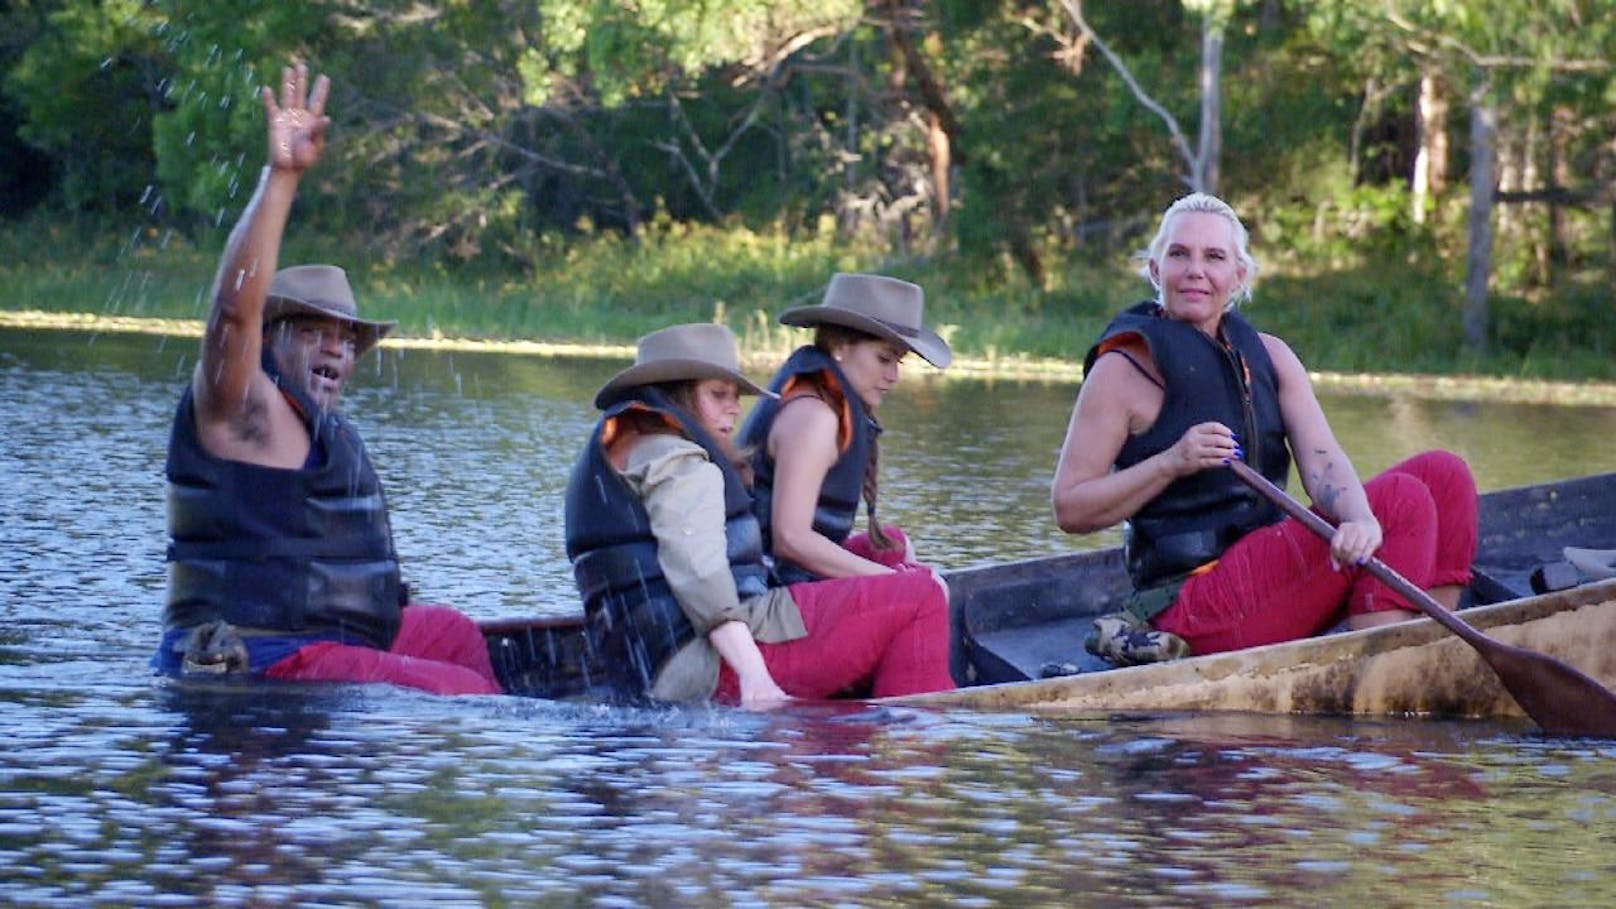 Sydney Youngblood, Tina York, Kattia Vides und Natascha Ochsenknecht reisen in einem morschen Boot Richtung Camp. Erst geht alles gut, ....